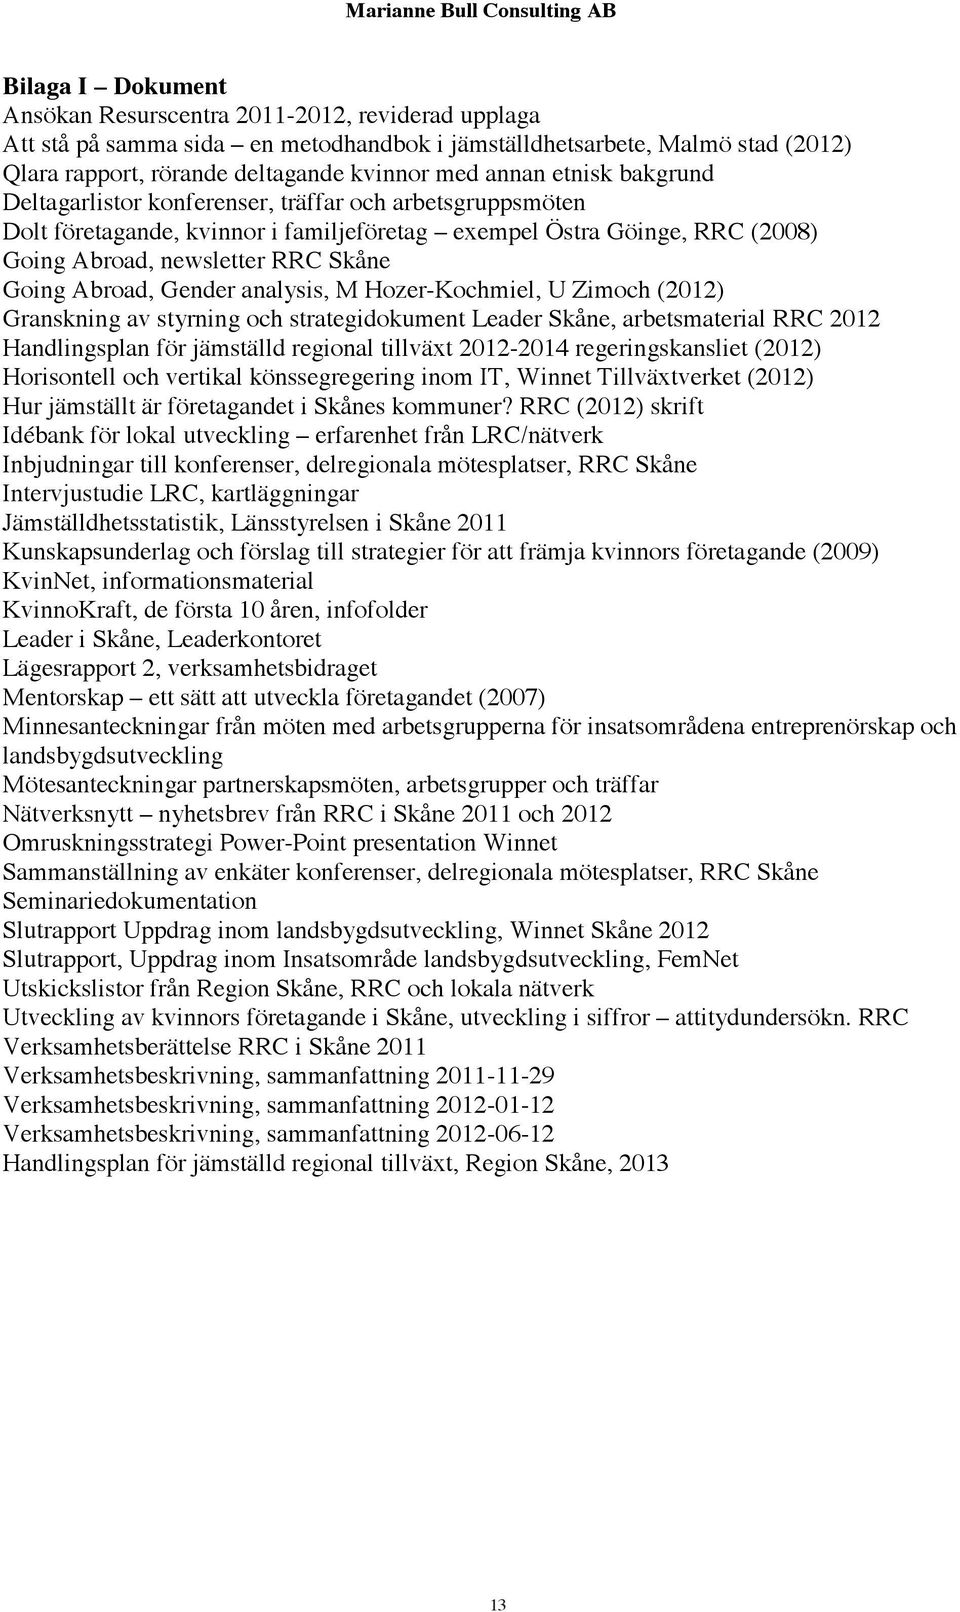 Gender analysis, M Hozer-Kochmiel, U Zimoch (2012) Granskning av styrning och strategidokument Leader Skåne, arbetsmaterial RRC 2012 Handlingsplan för jämställd regional tillväxt 2012-2014